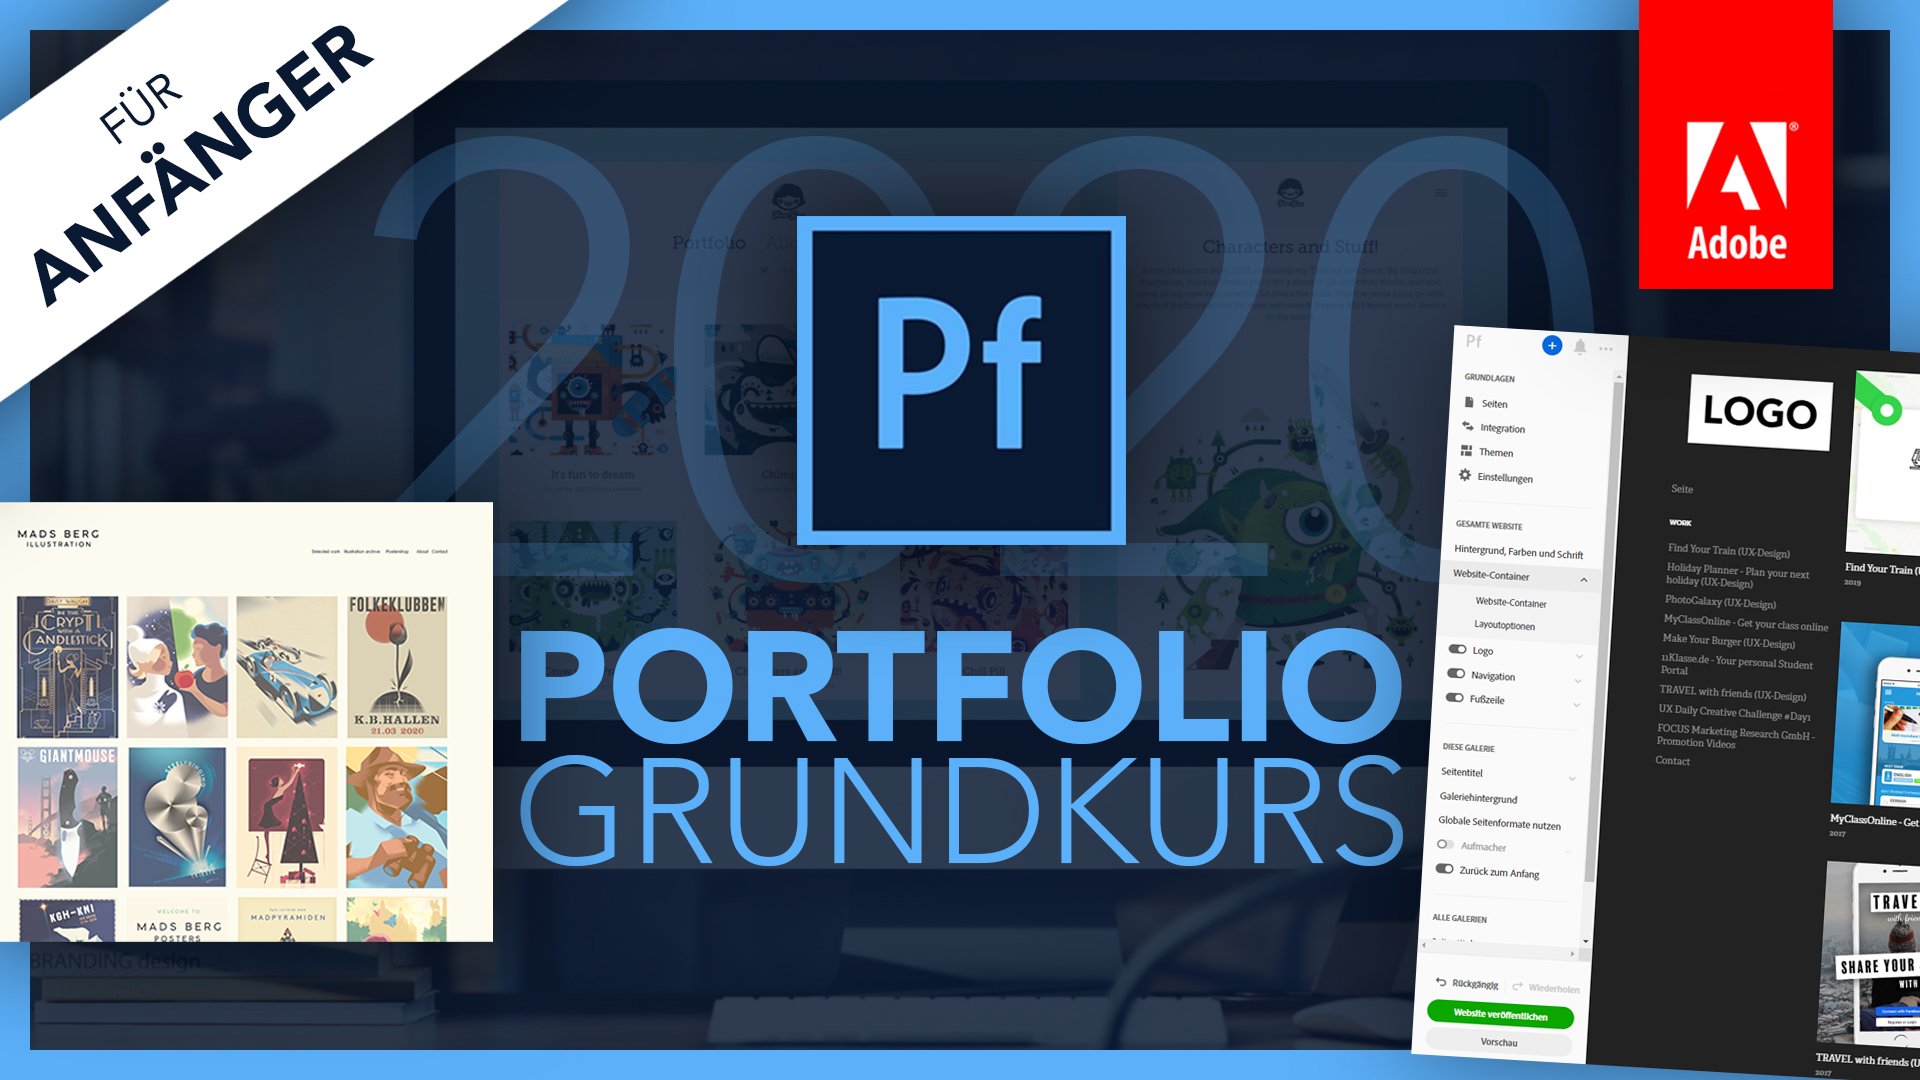 Adobe Portfolio 2020 (Grundkurs für Anfänger) Deutsch (Tutorial)